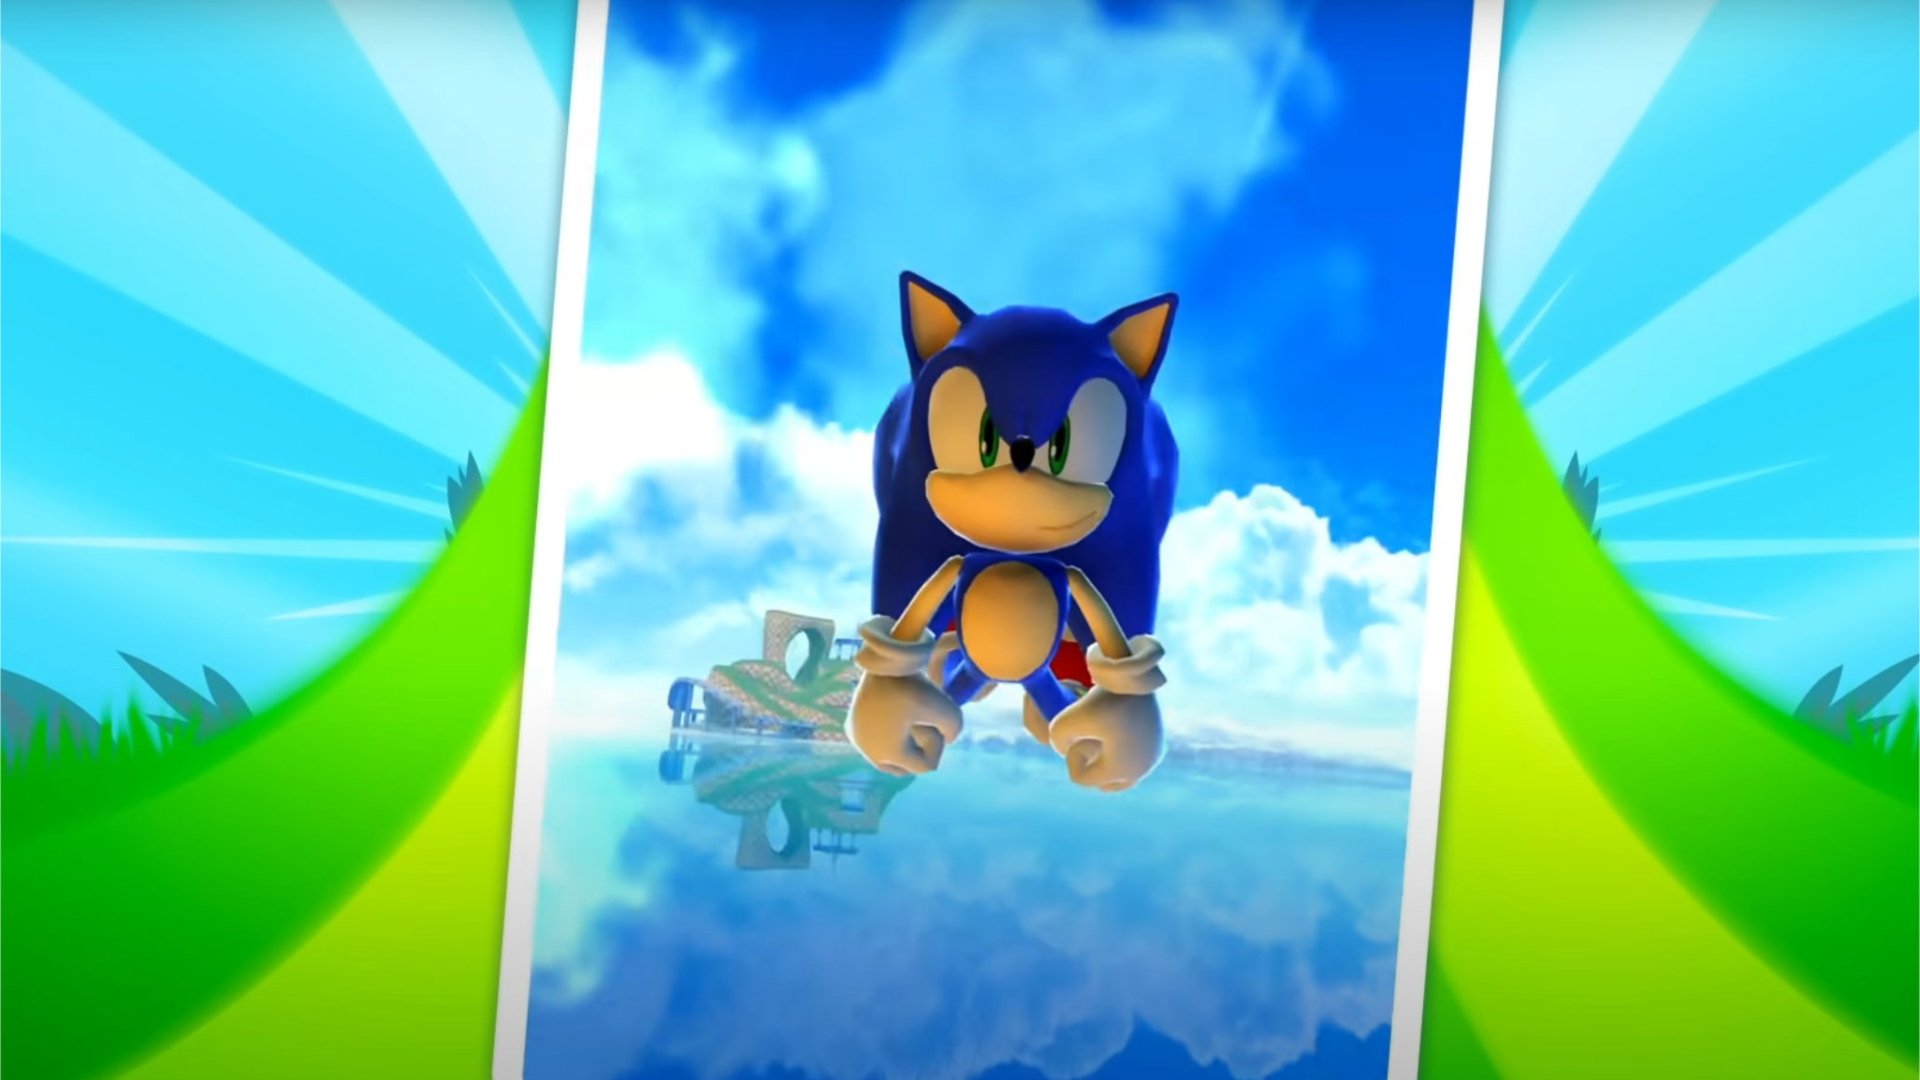 Sonic Dash exceeds 500 million downloads